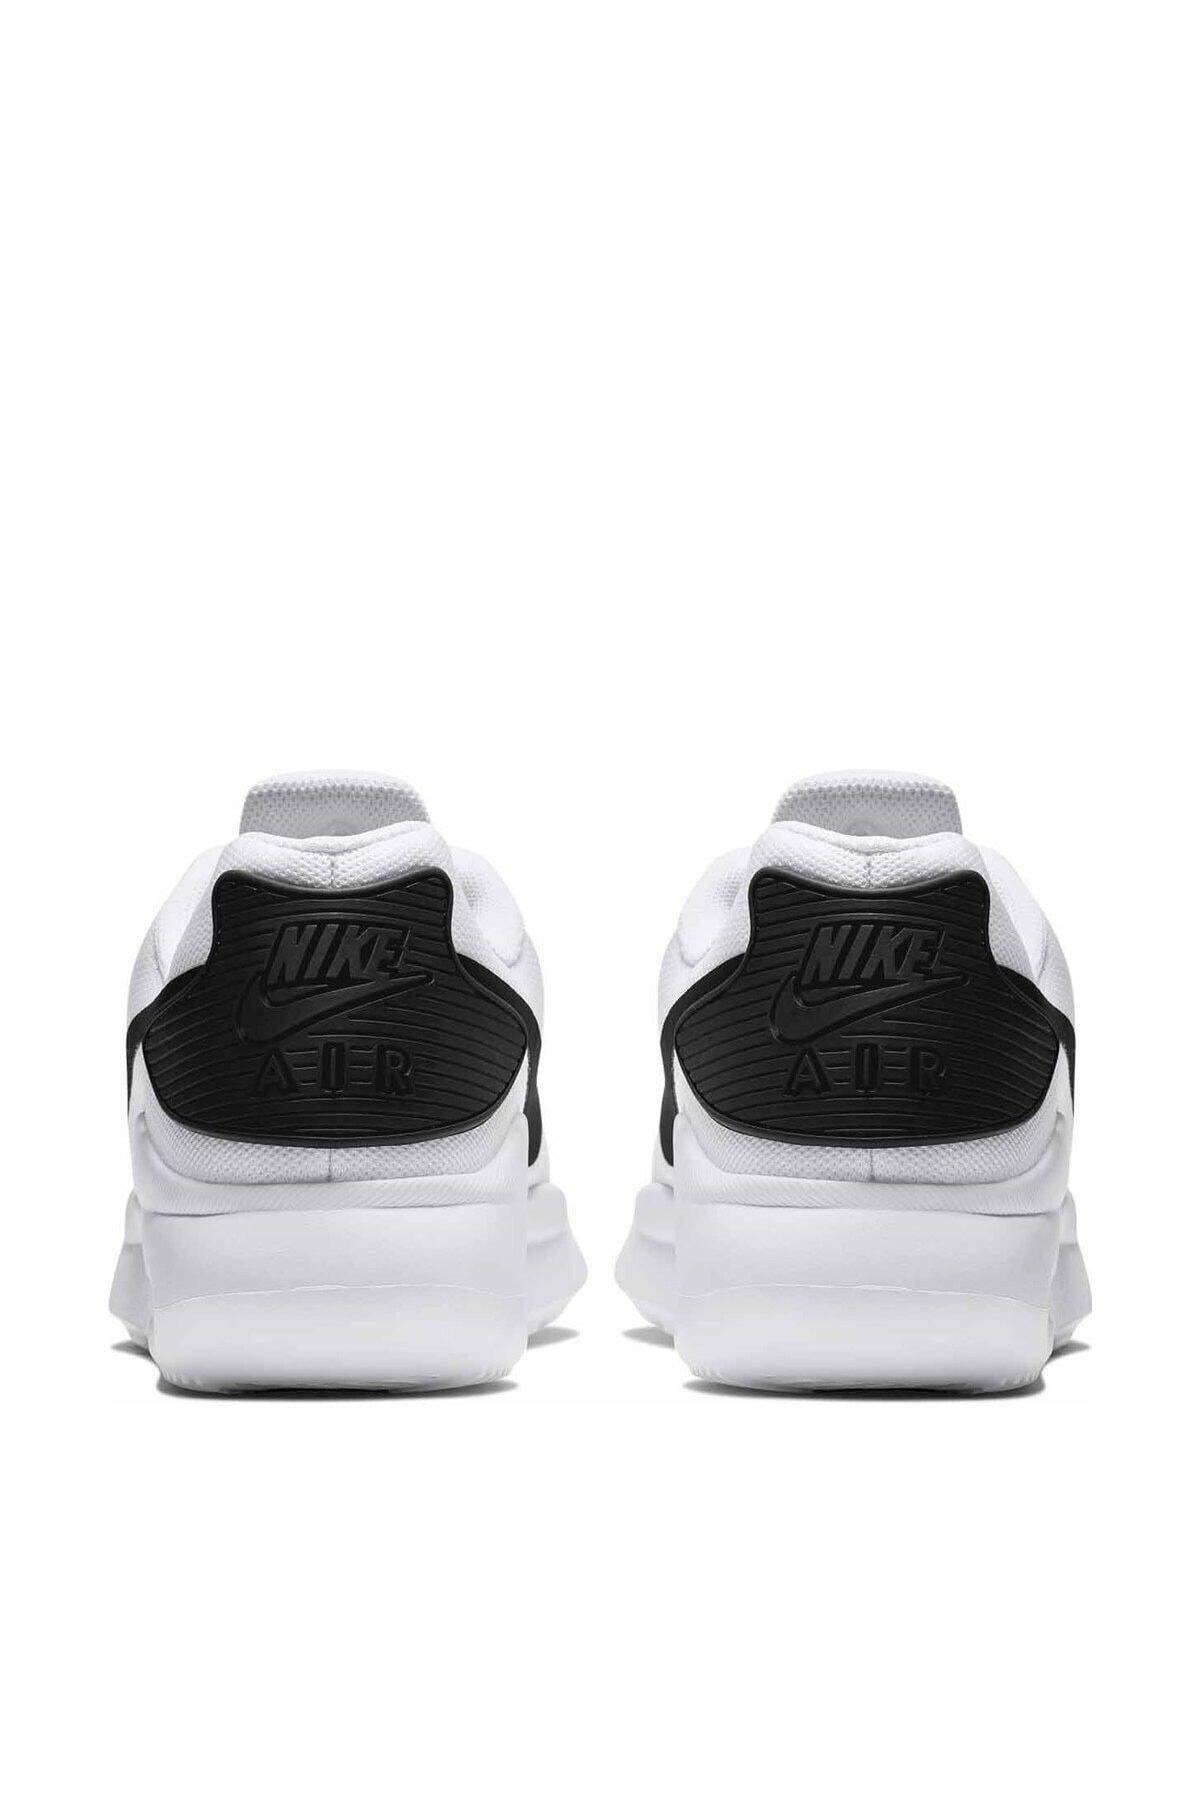 Nike Unisex Beyaz Günlük Spor Ayakkabı Aq2235-100 Aır Max Oketo ZN9356